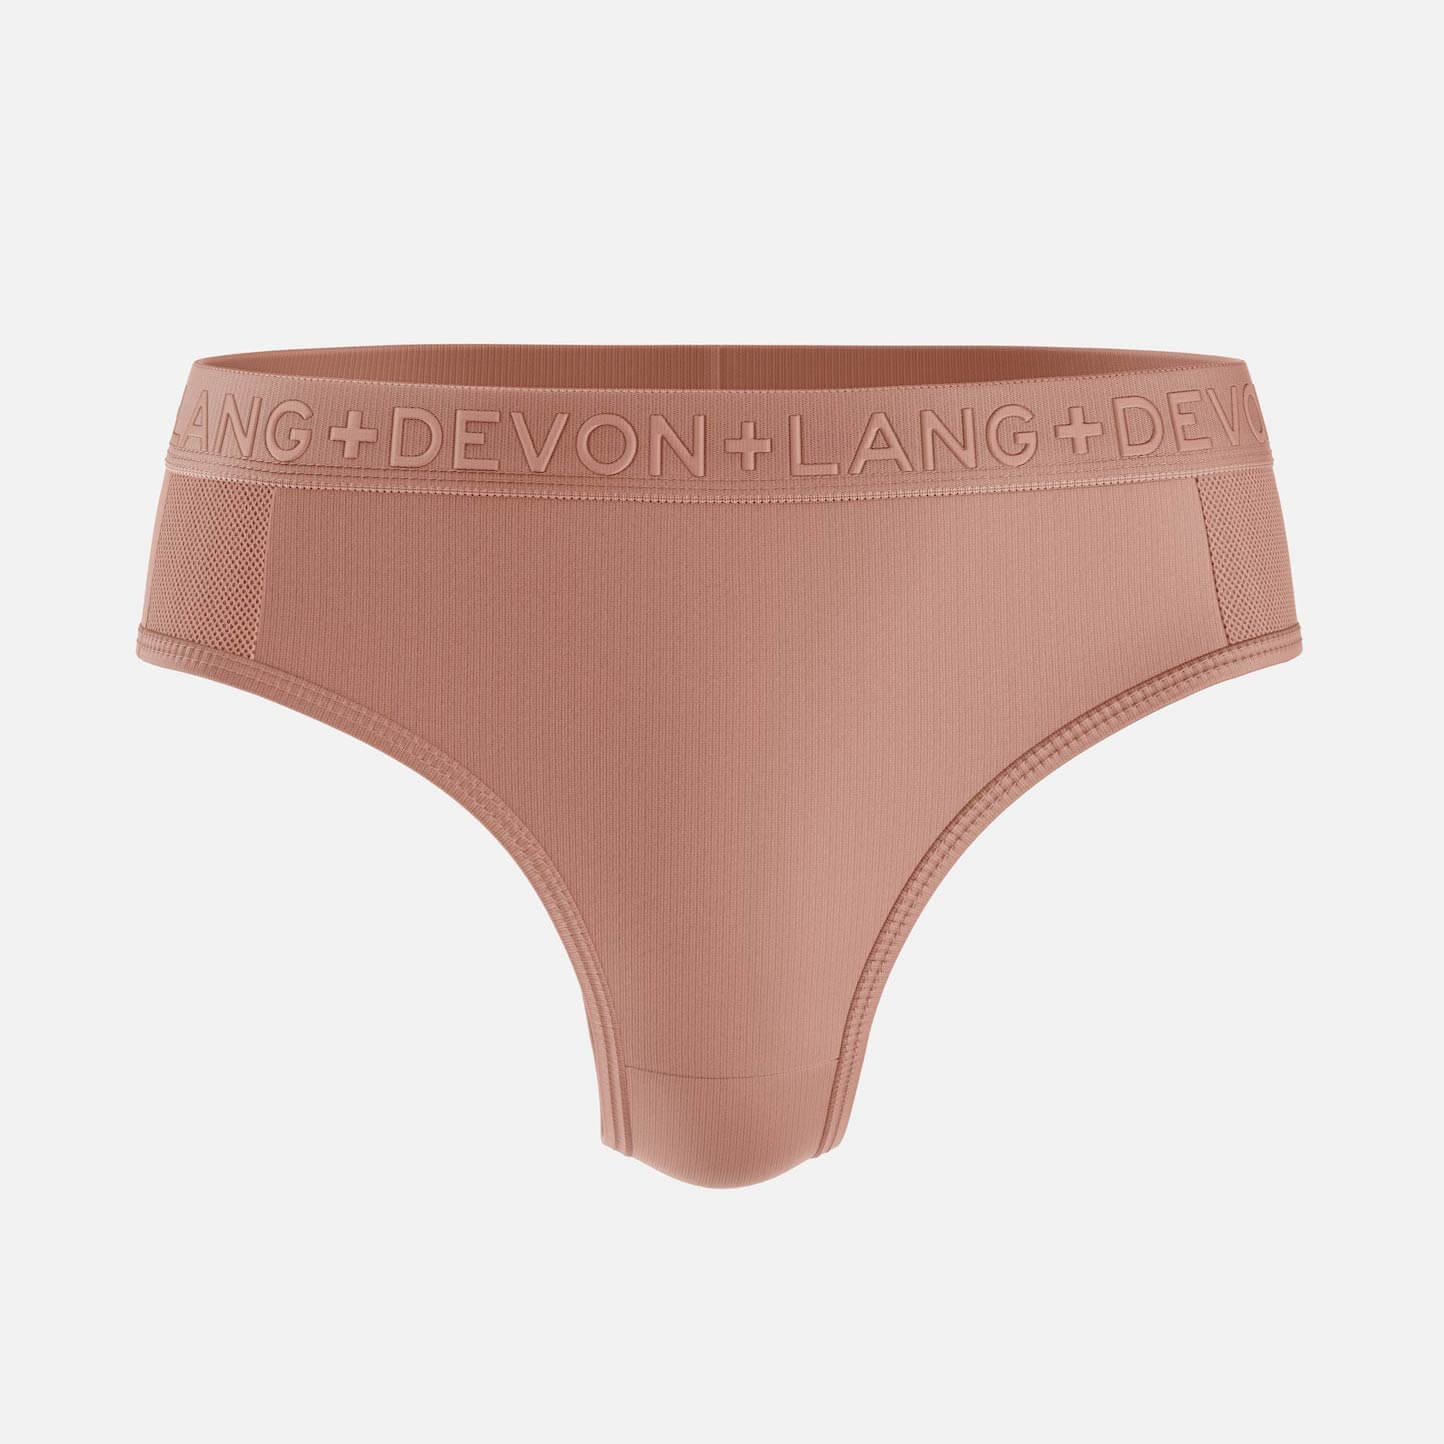 LOVED. Pouch Underwear – Devon + Lang